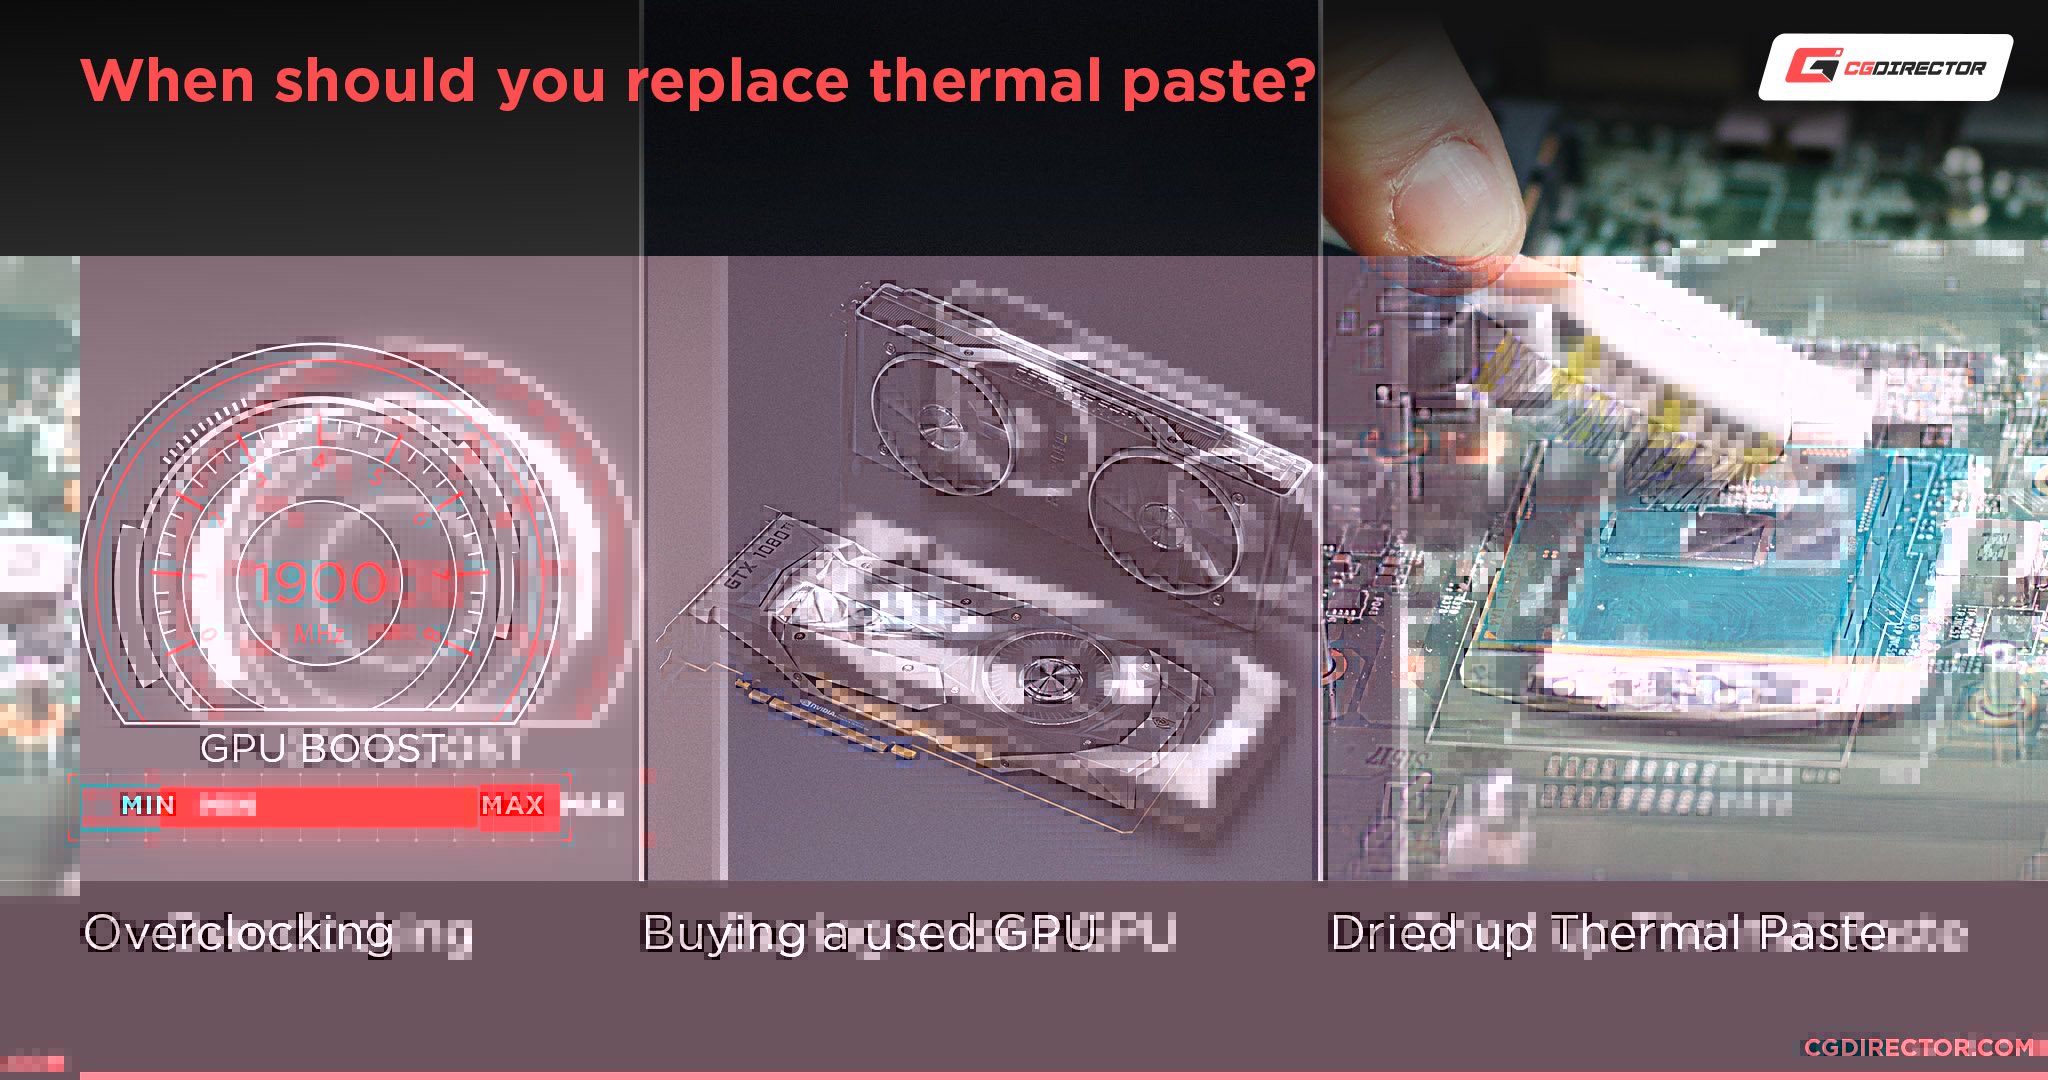 Replacing GPU Thermal paste